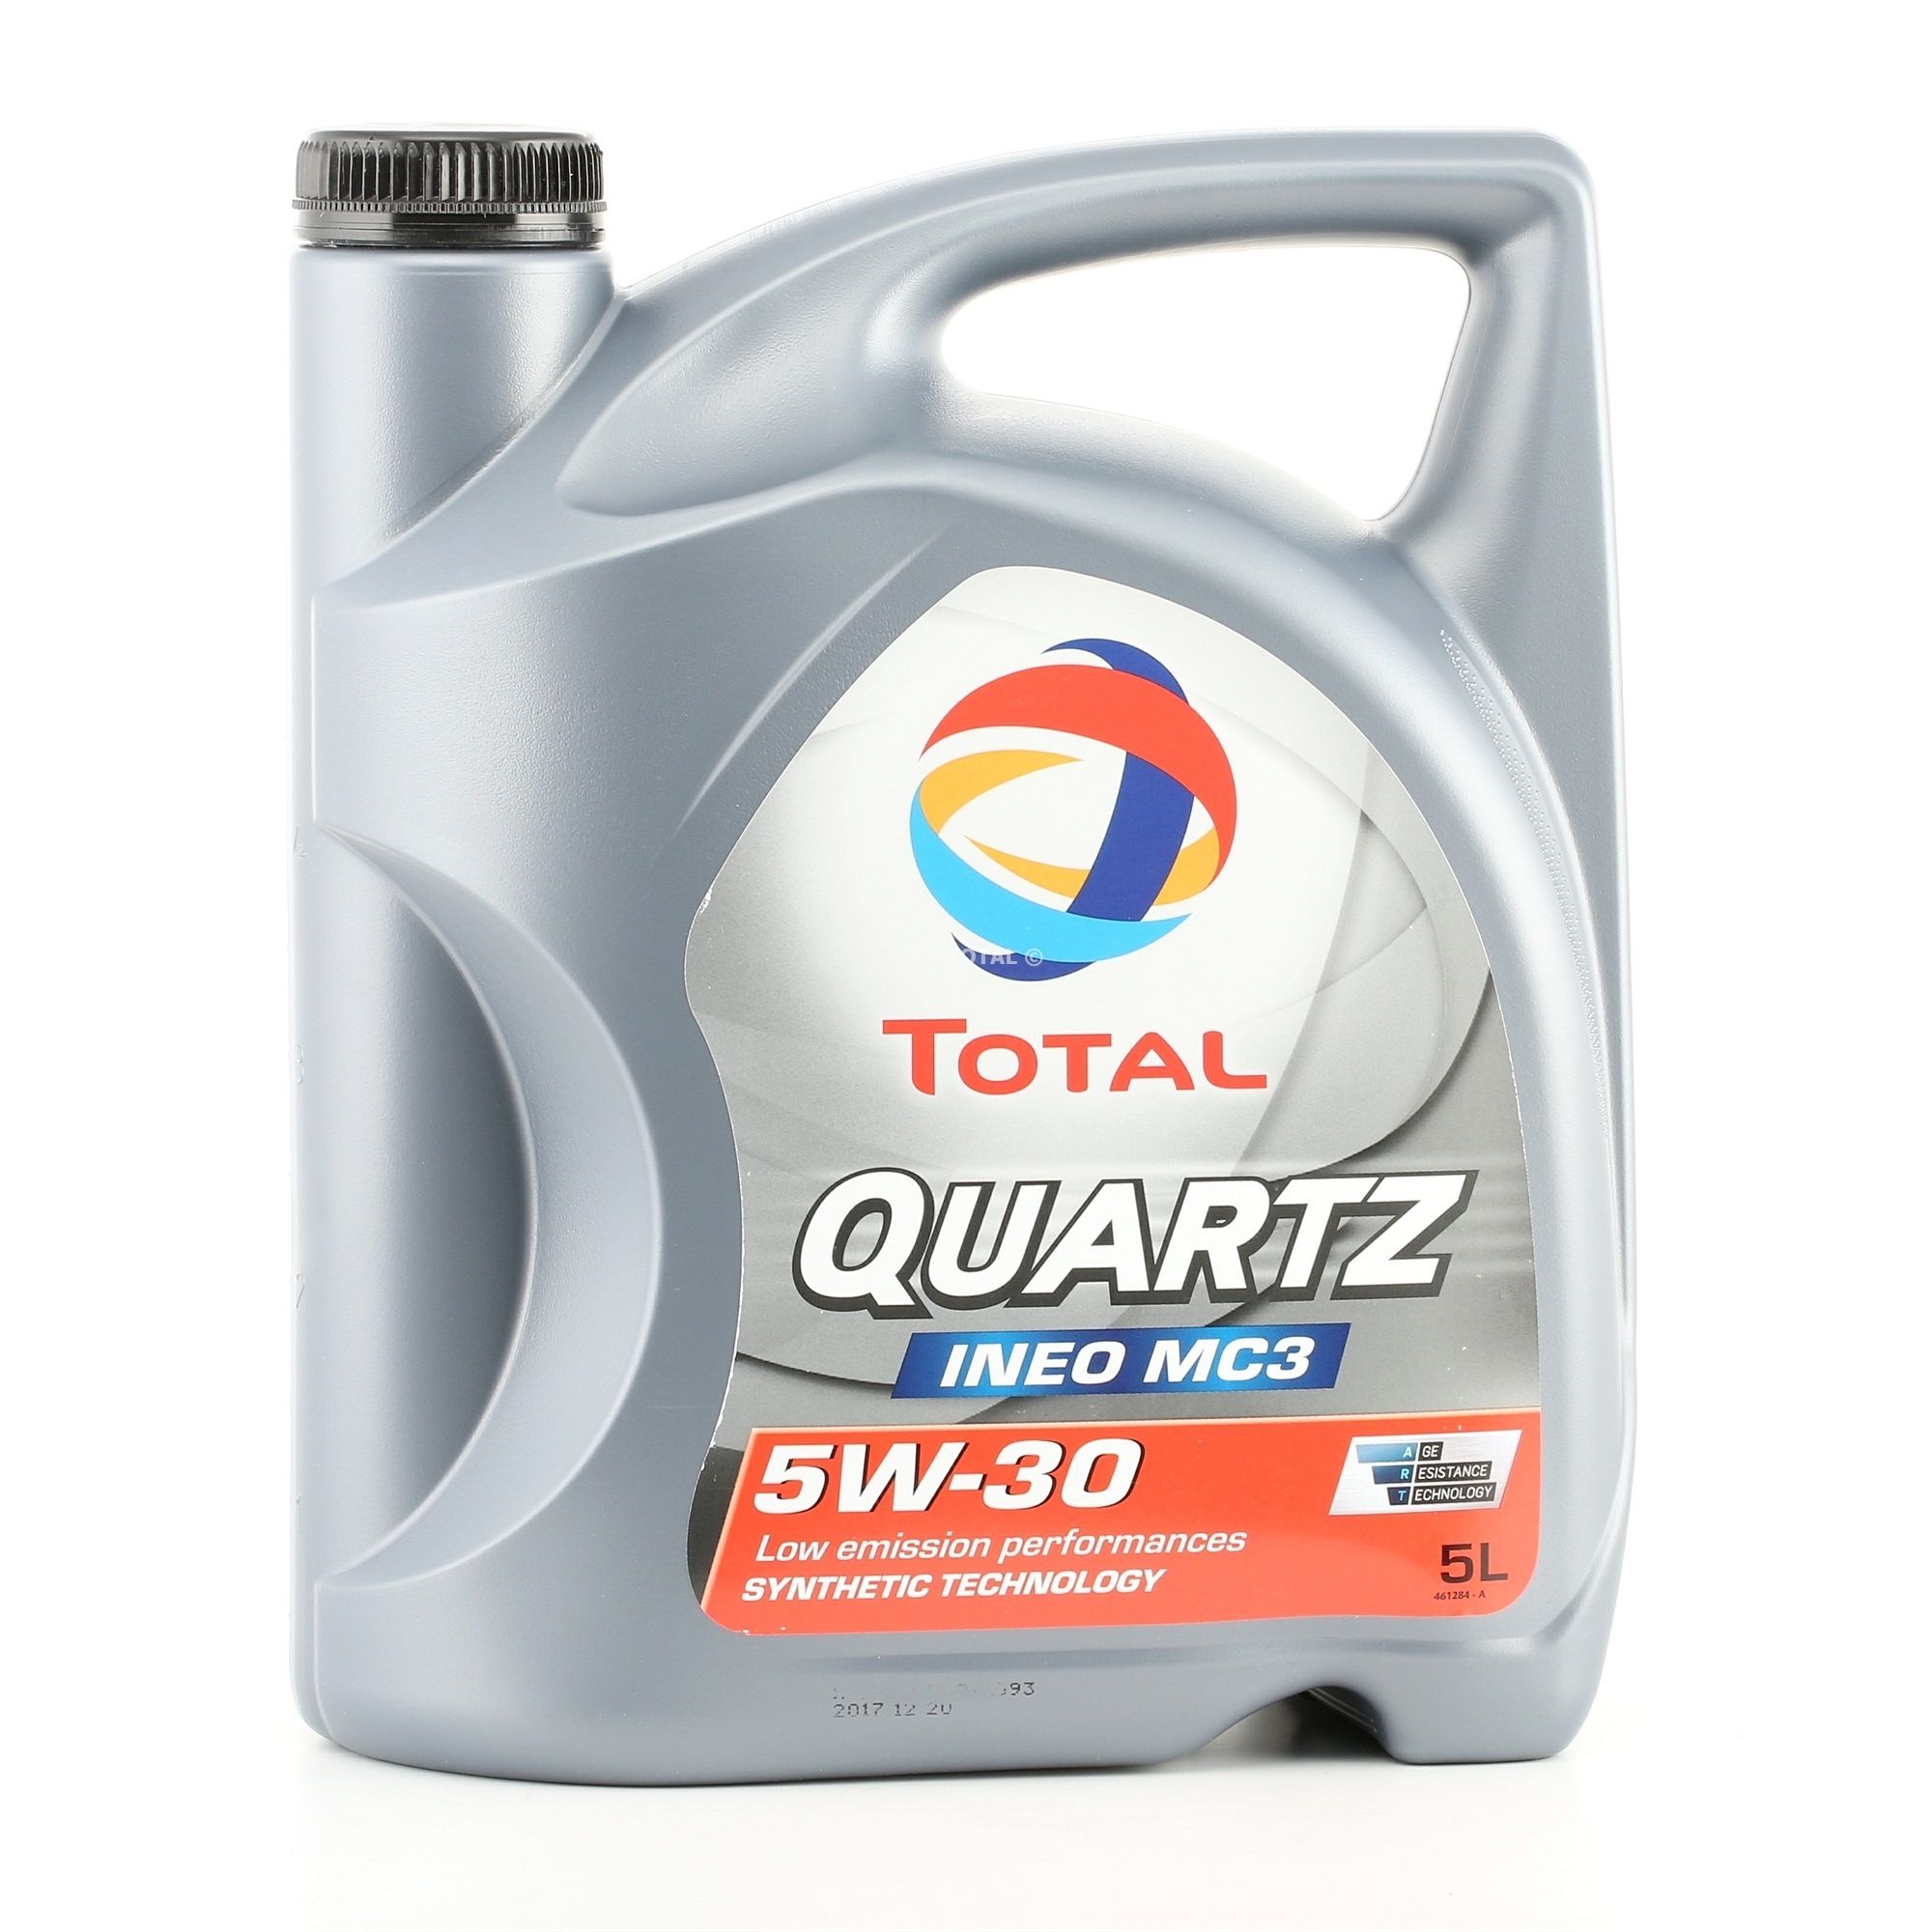 TOTAL 2204221 Auto motorolie 5W-30, 5L, Synthetische olie Suzuki in originele kwaliteit